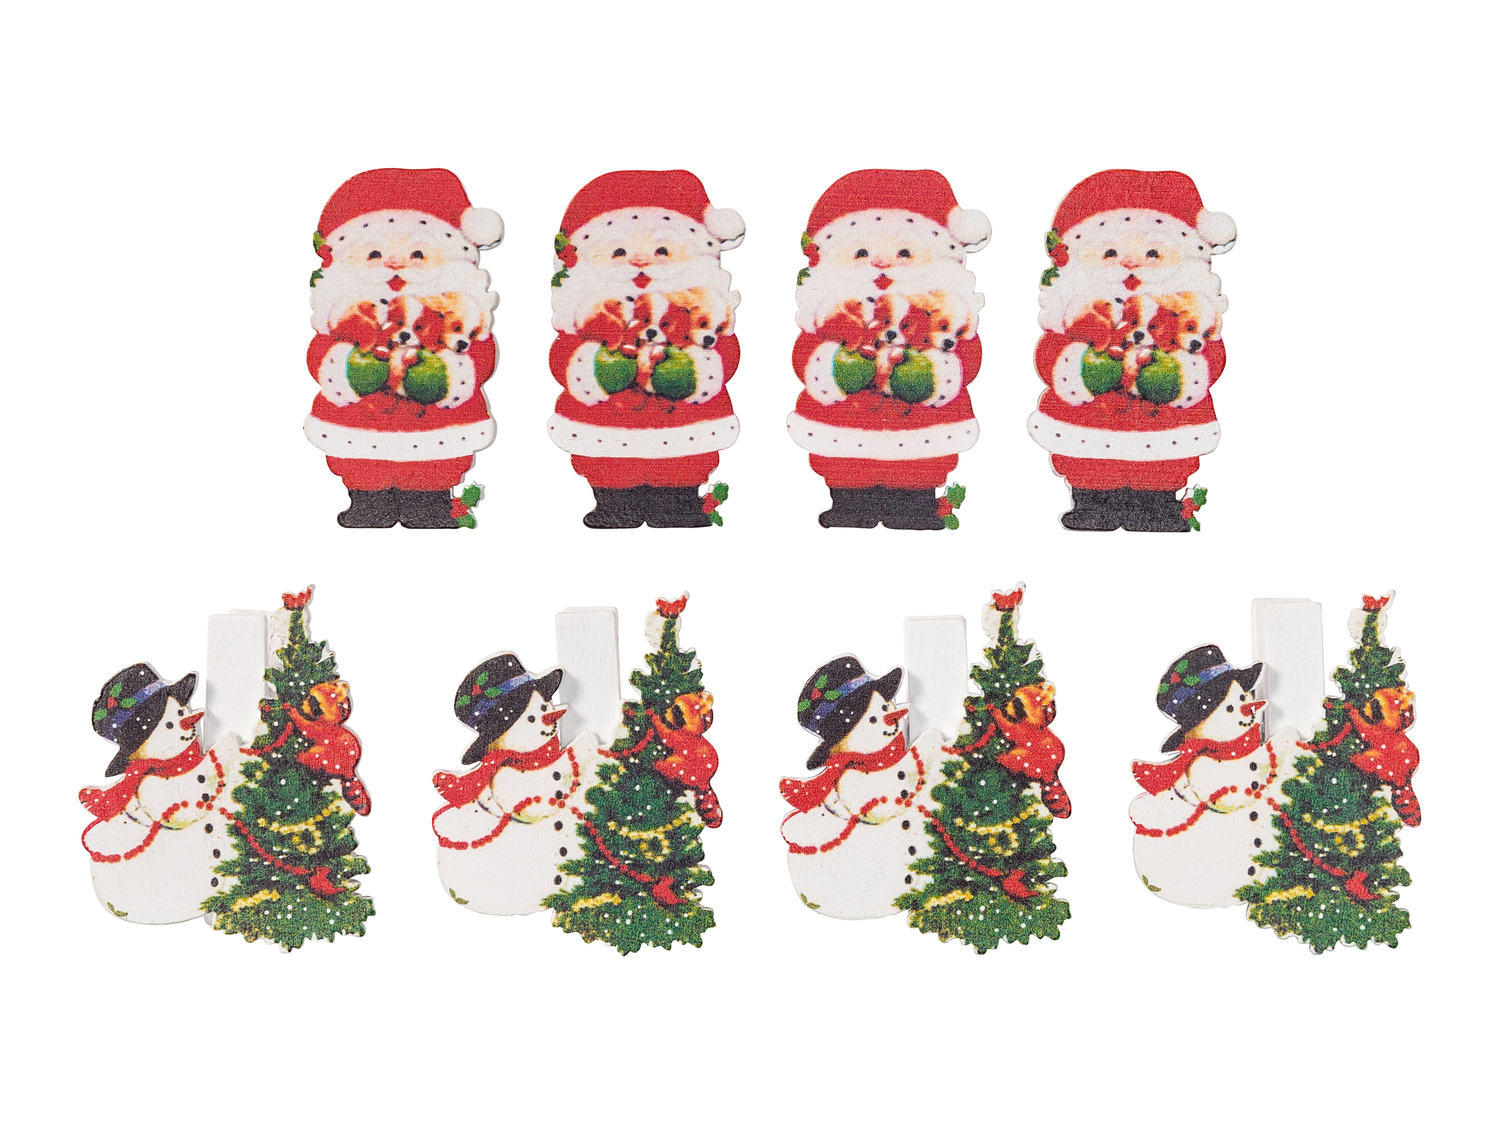 Decorazioni  di Natale in legno Melinera, prezzo 0.99 &#8364;  

Caratteristiche